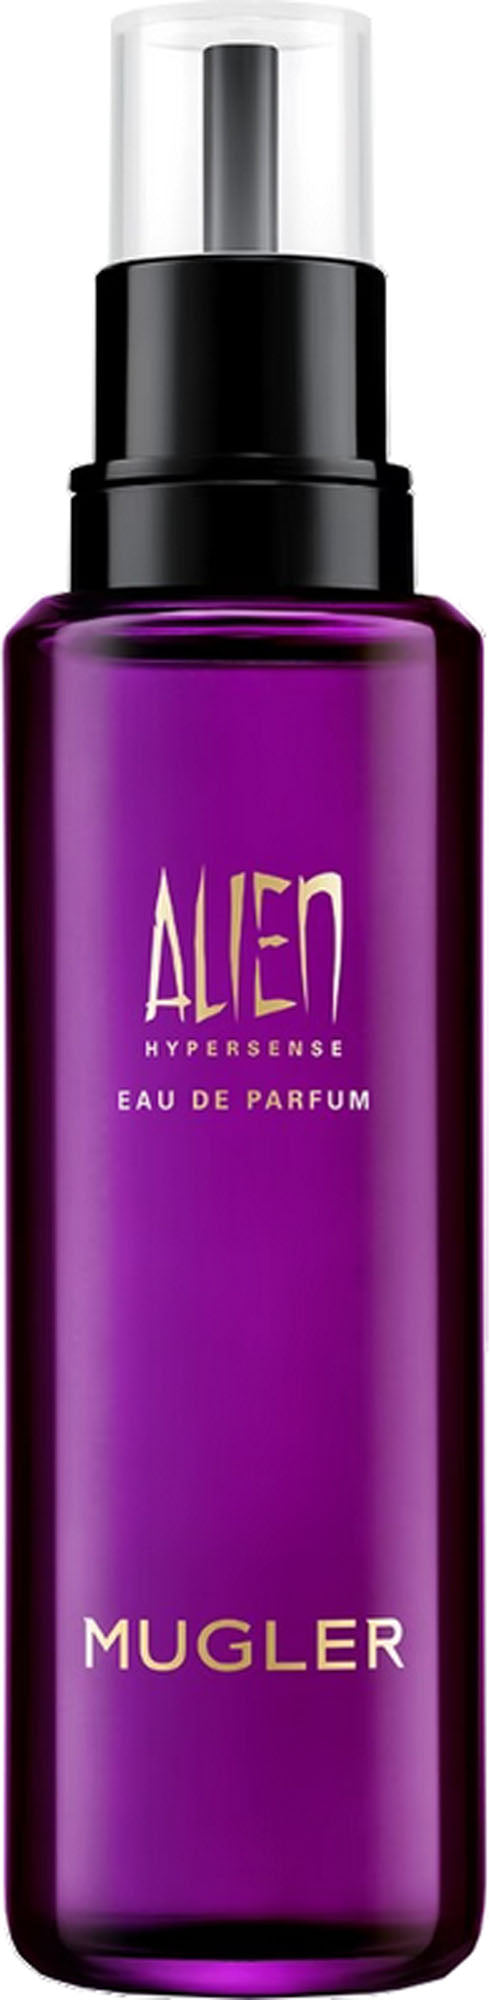 alien hypersense